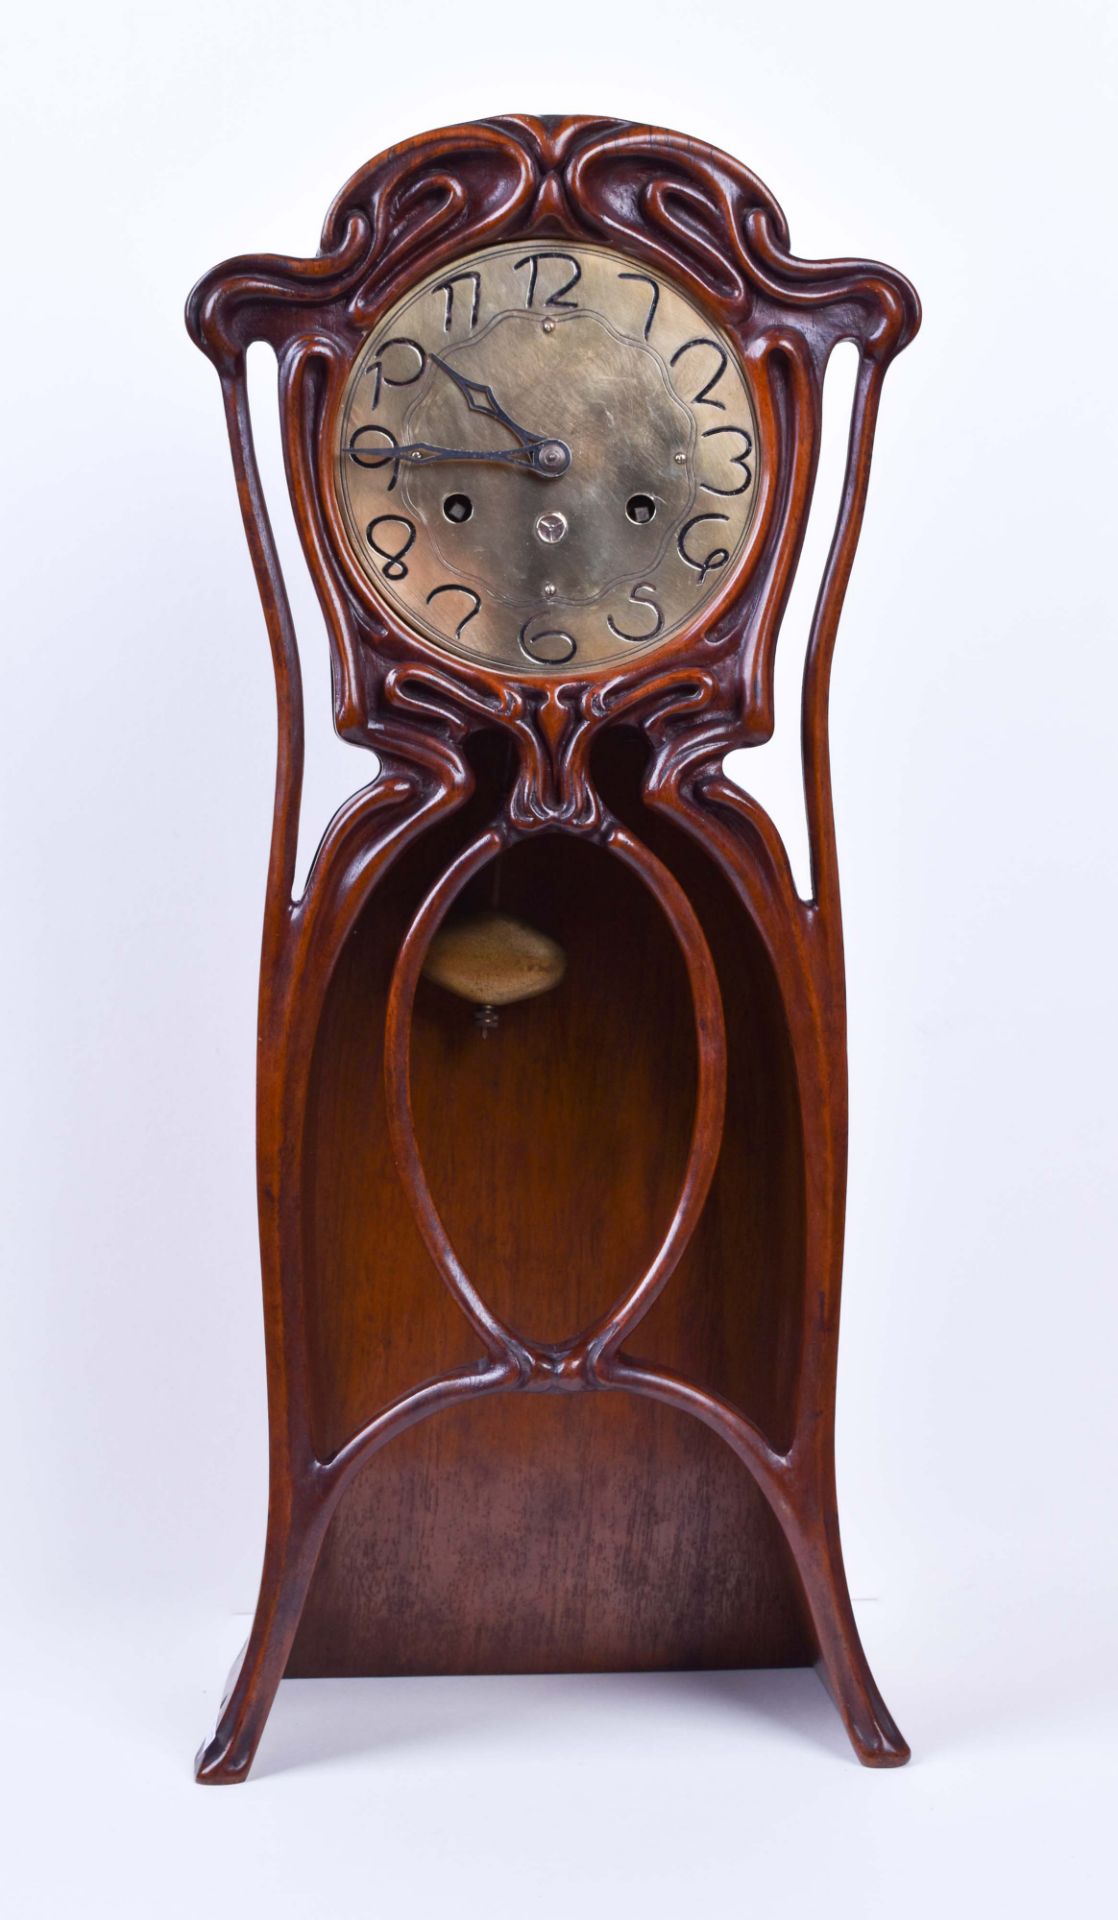 Jugendstil-Uhr um 1900